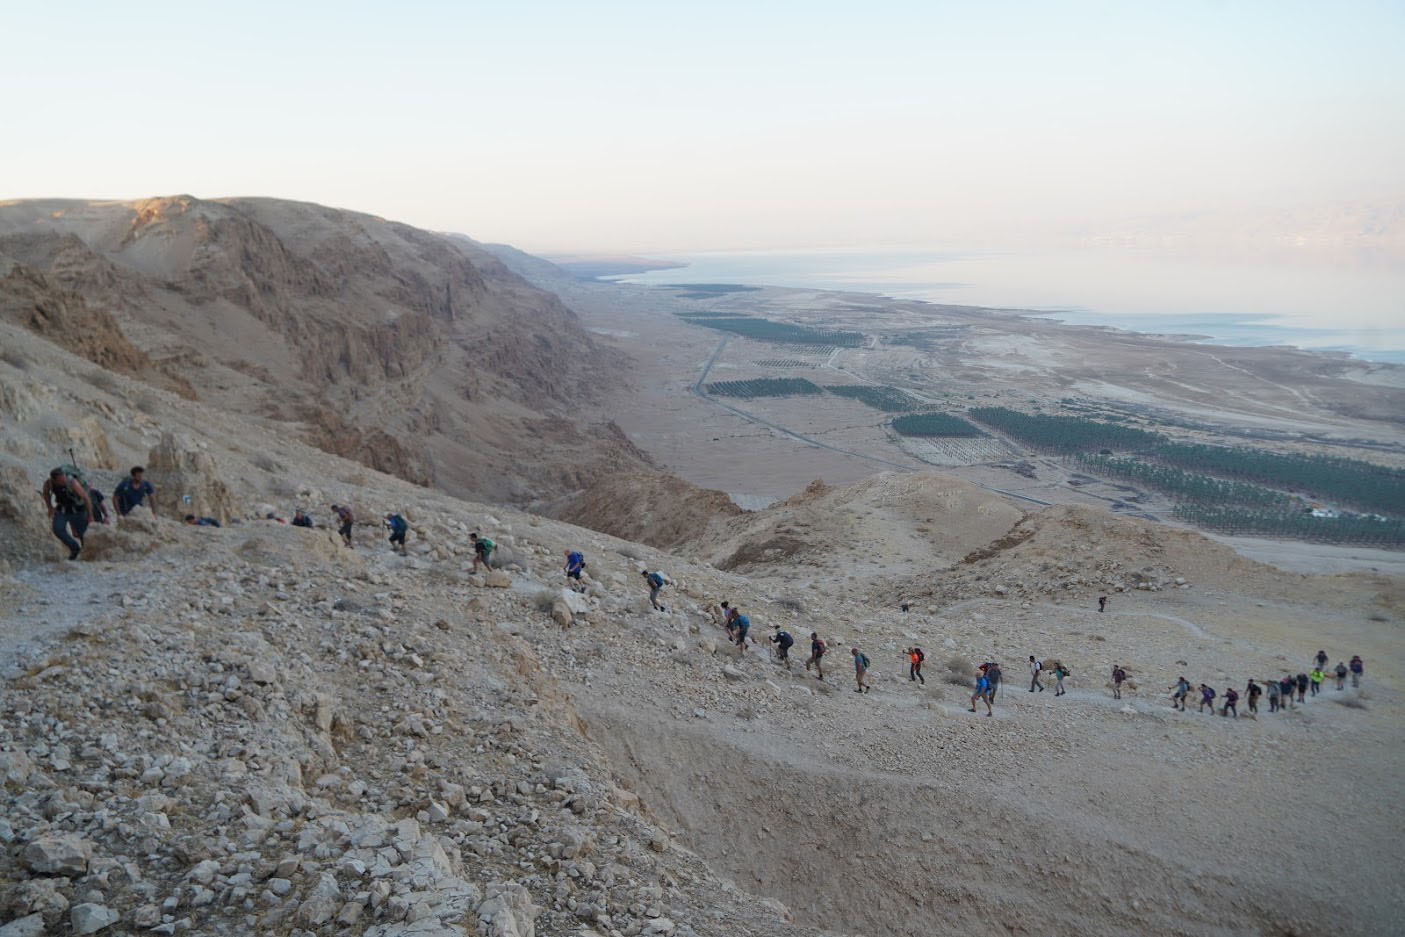 משחזרים את מסע לוחמי הפלמ"ח. "מסע לילי ארוך, מחופו של ים המלח ועד לירושלים" (צילום: שי בייטנר)